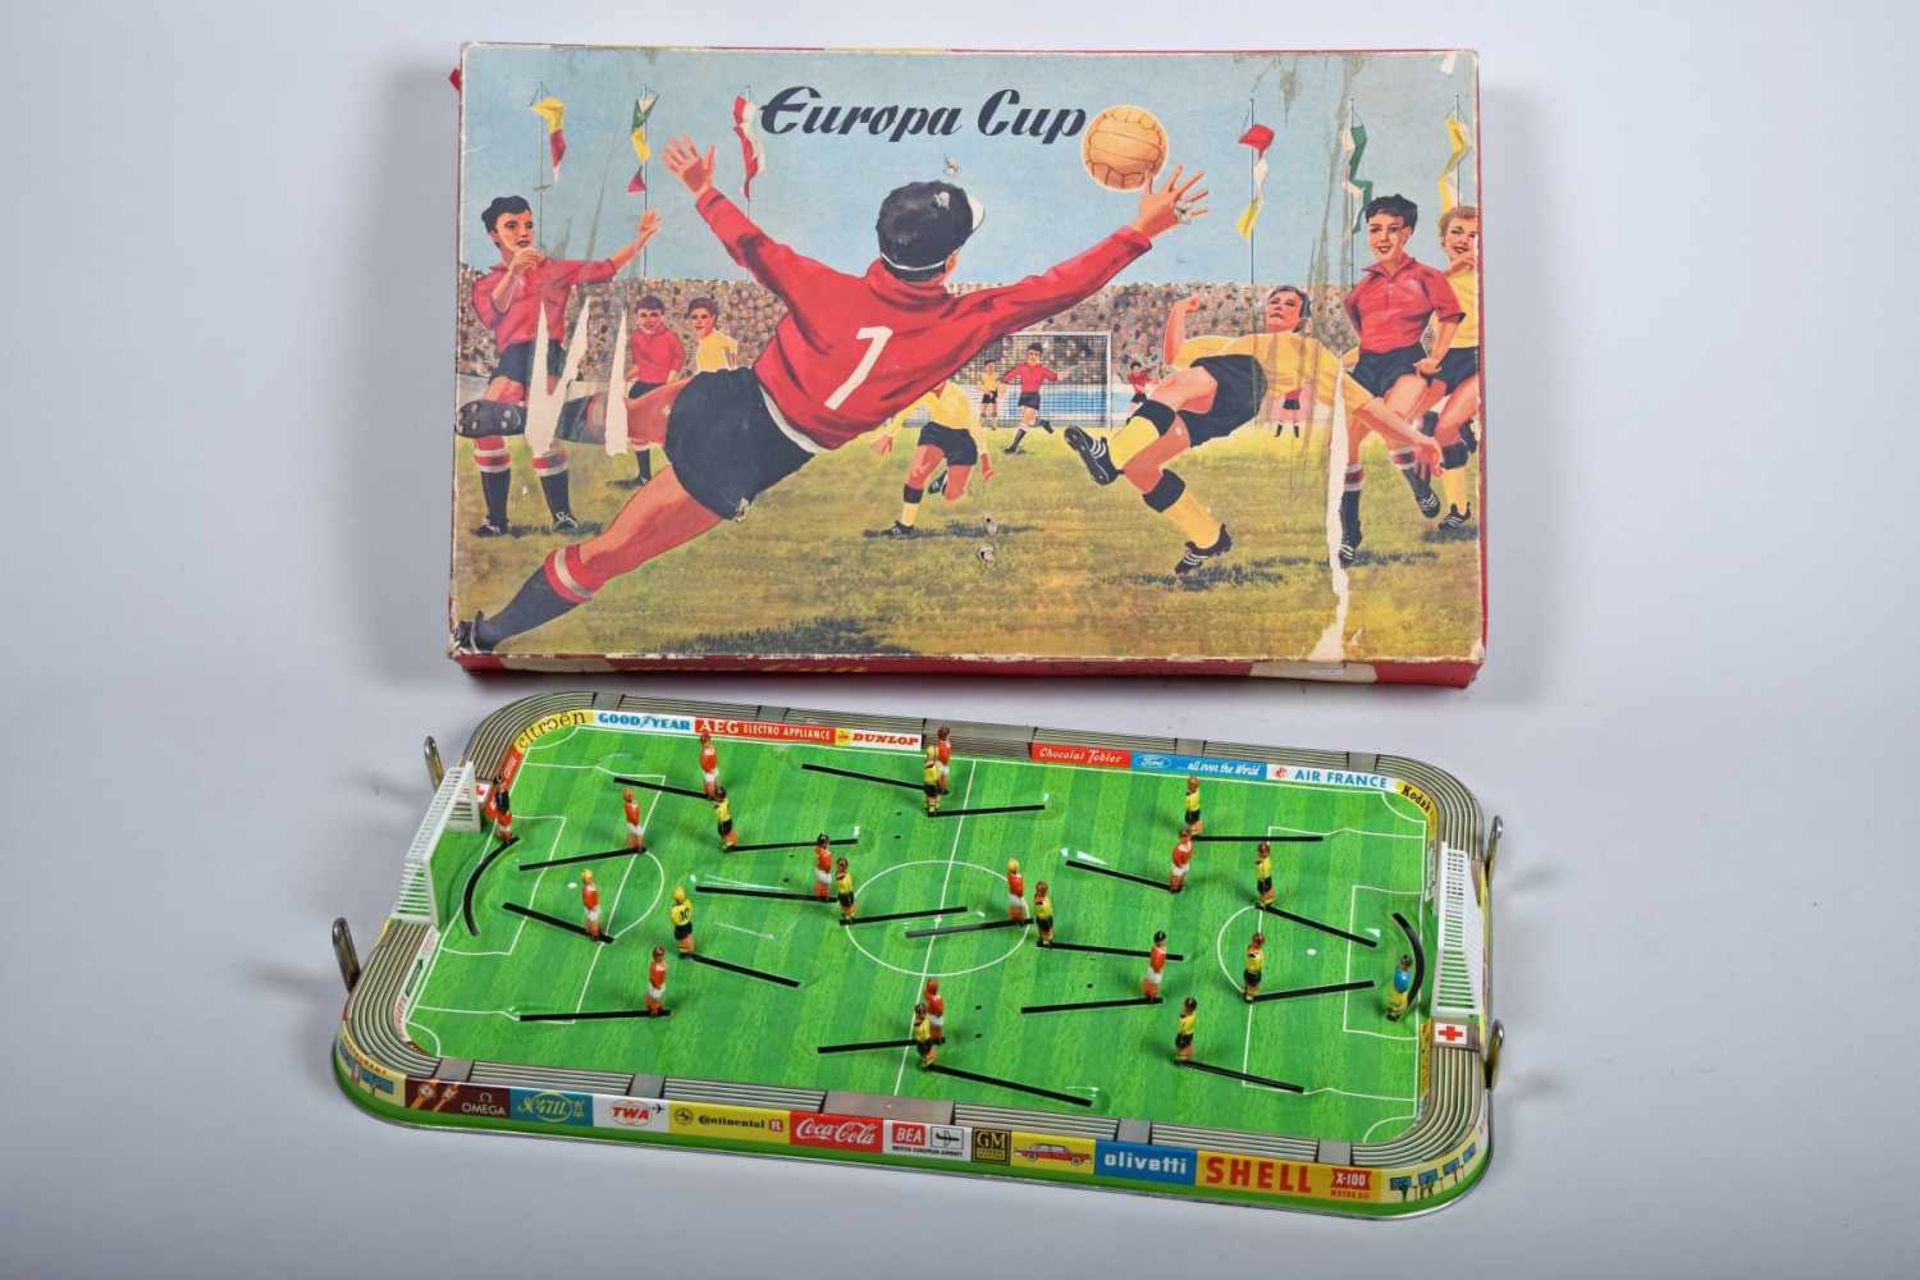 Technofix Europa CupBlech-Fussballspiel im Originalkarton. Spiel in gutem Zustand mit 3 Bällen (